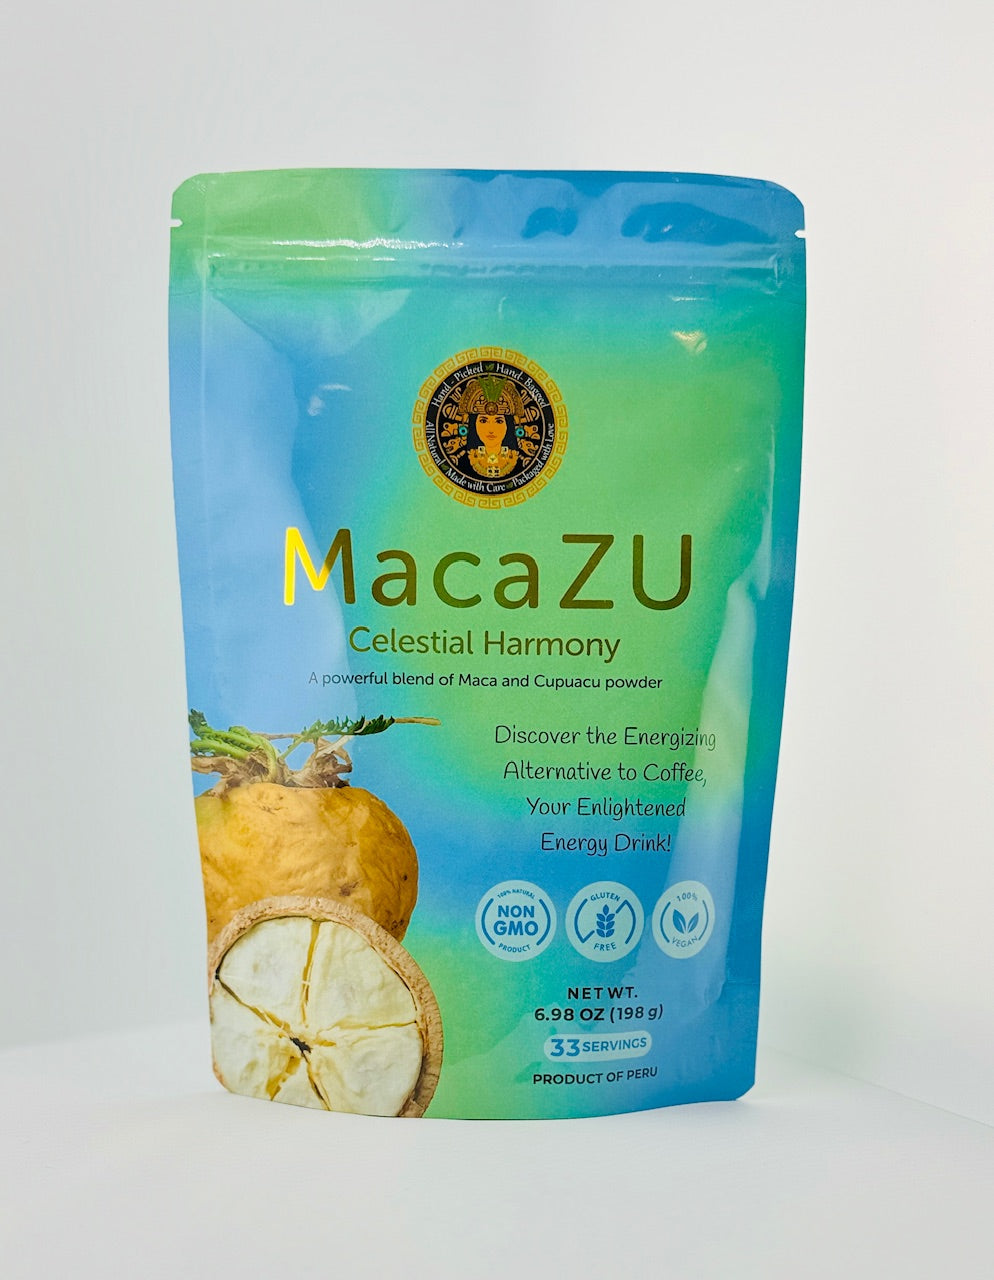 MacaZU - Your Enlightened Energy Drink